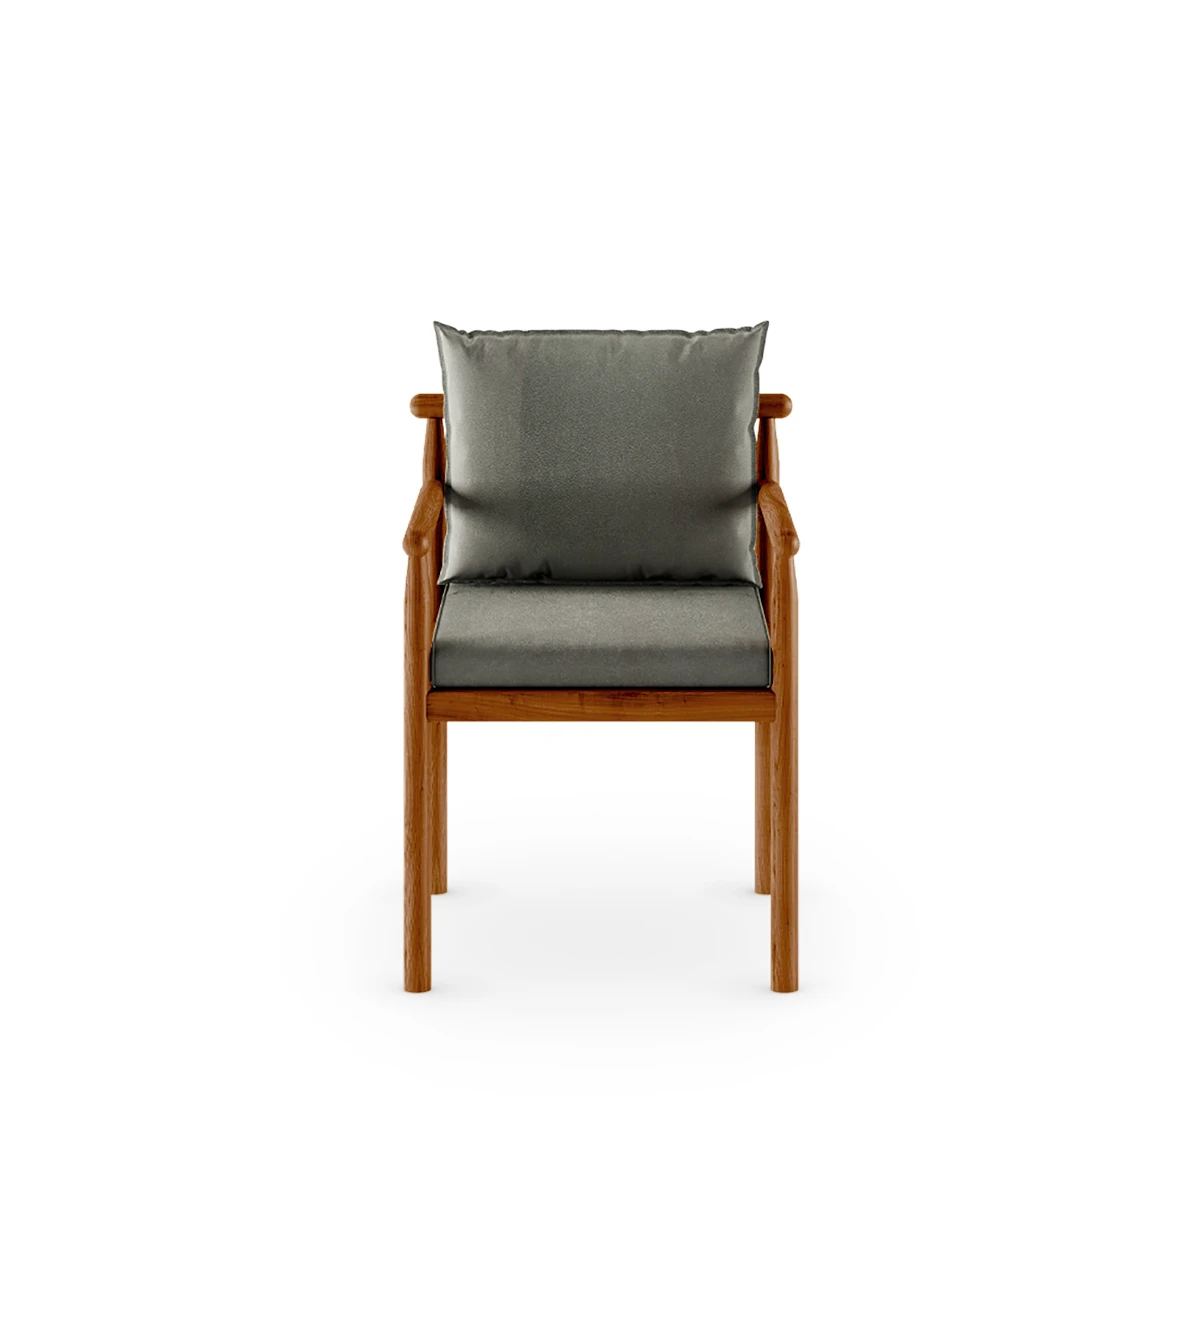 Cadeira com braços, almofadas estofadas a tecido e estrutura em madeira natural cor mel.